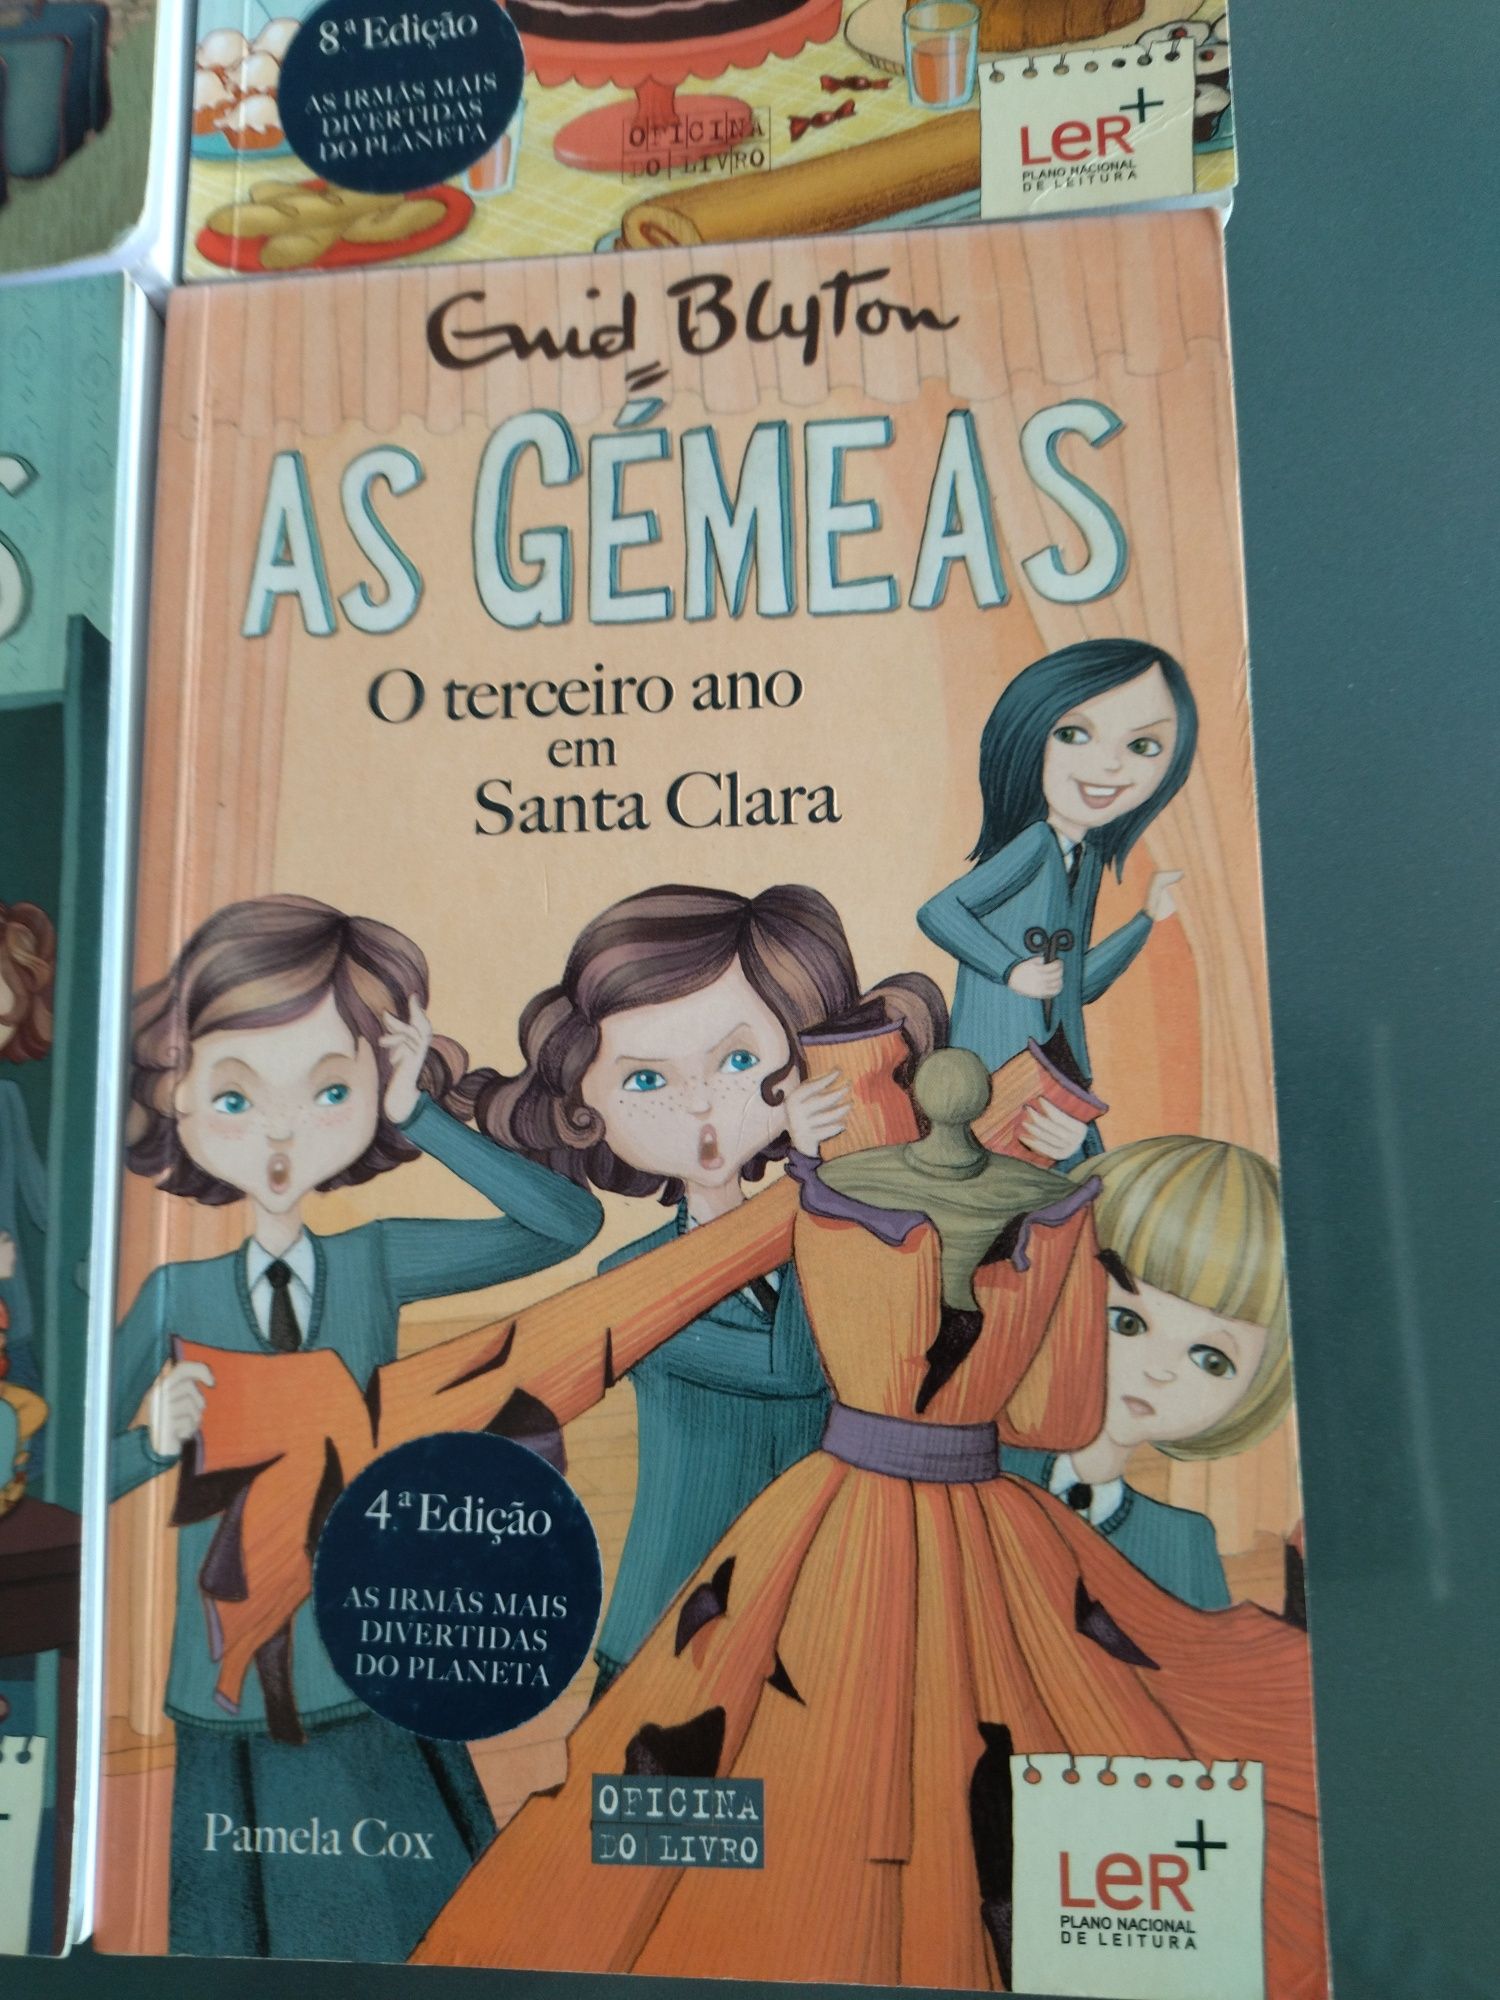 5 X Livros da série "As gémeas"